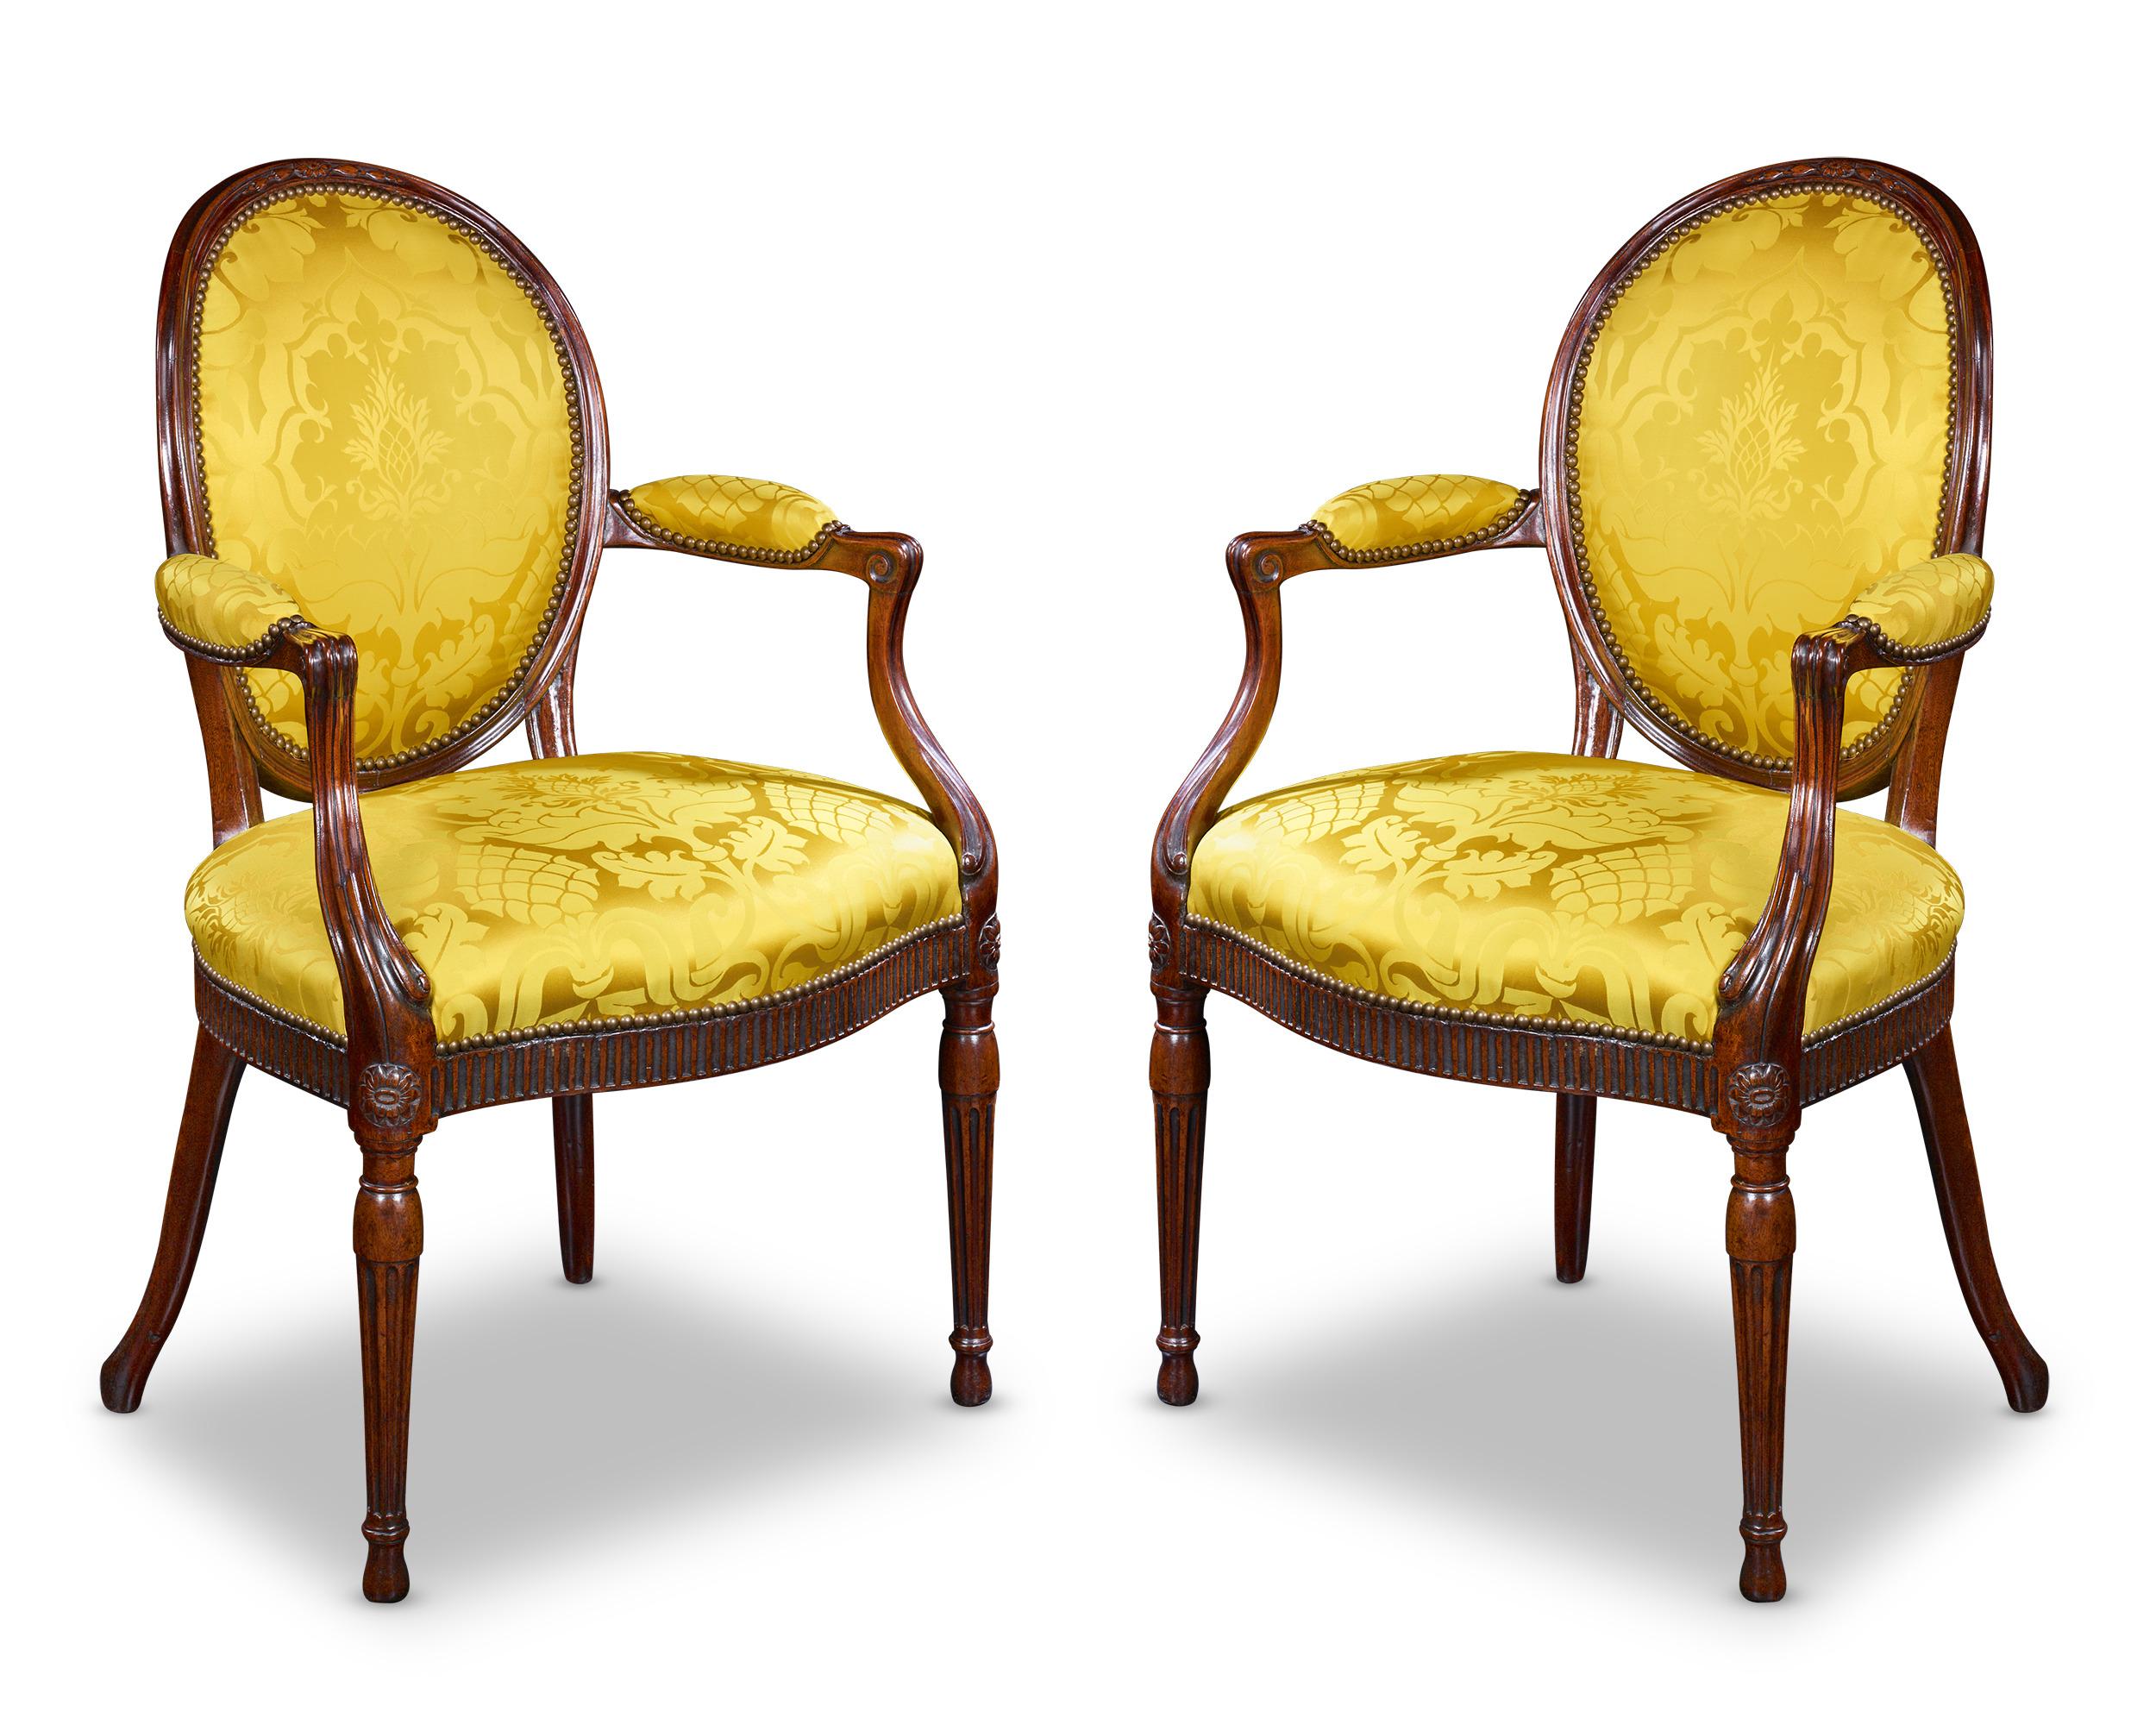 Cet ensemble de deux chaises en acajou a été fabriqué par l'inimitable et célèbre Thomas Chippendale. Les sièges rembourrés jaunes complètent magnifiquement l'acajou profond, créant un équilibre élégant. Le talent et le génie des designs de Thomas